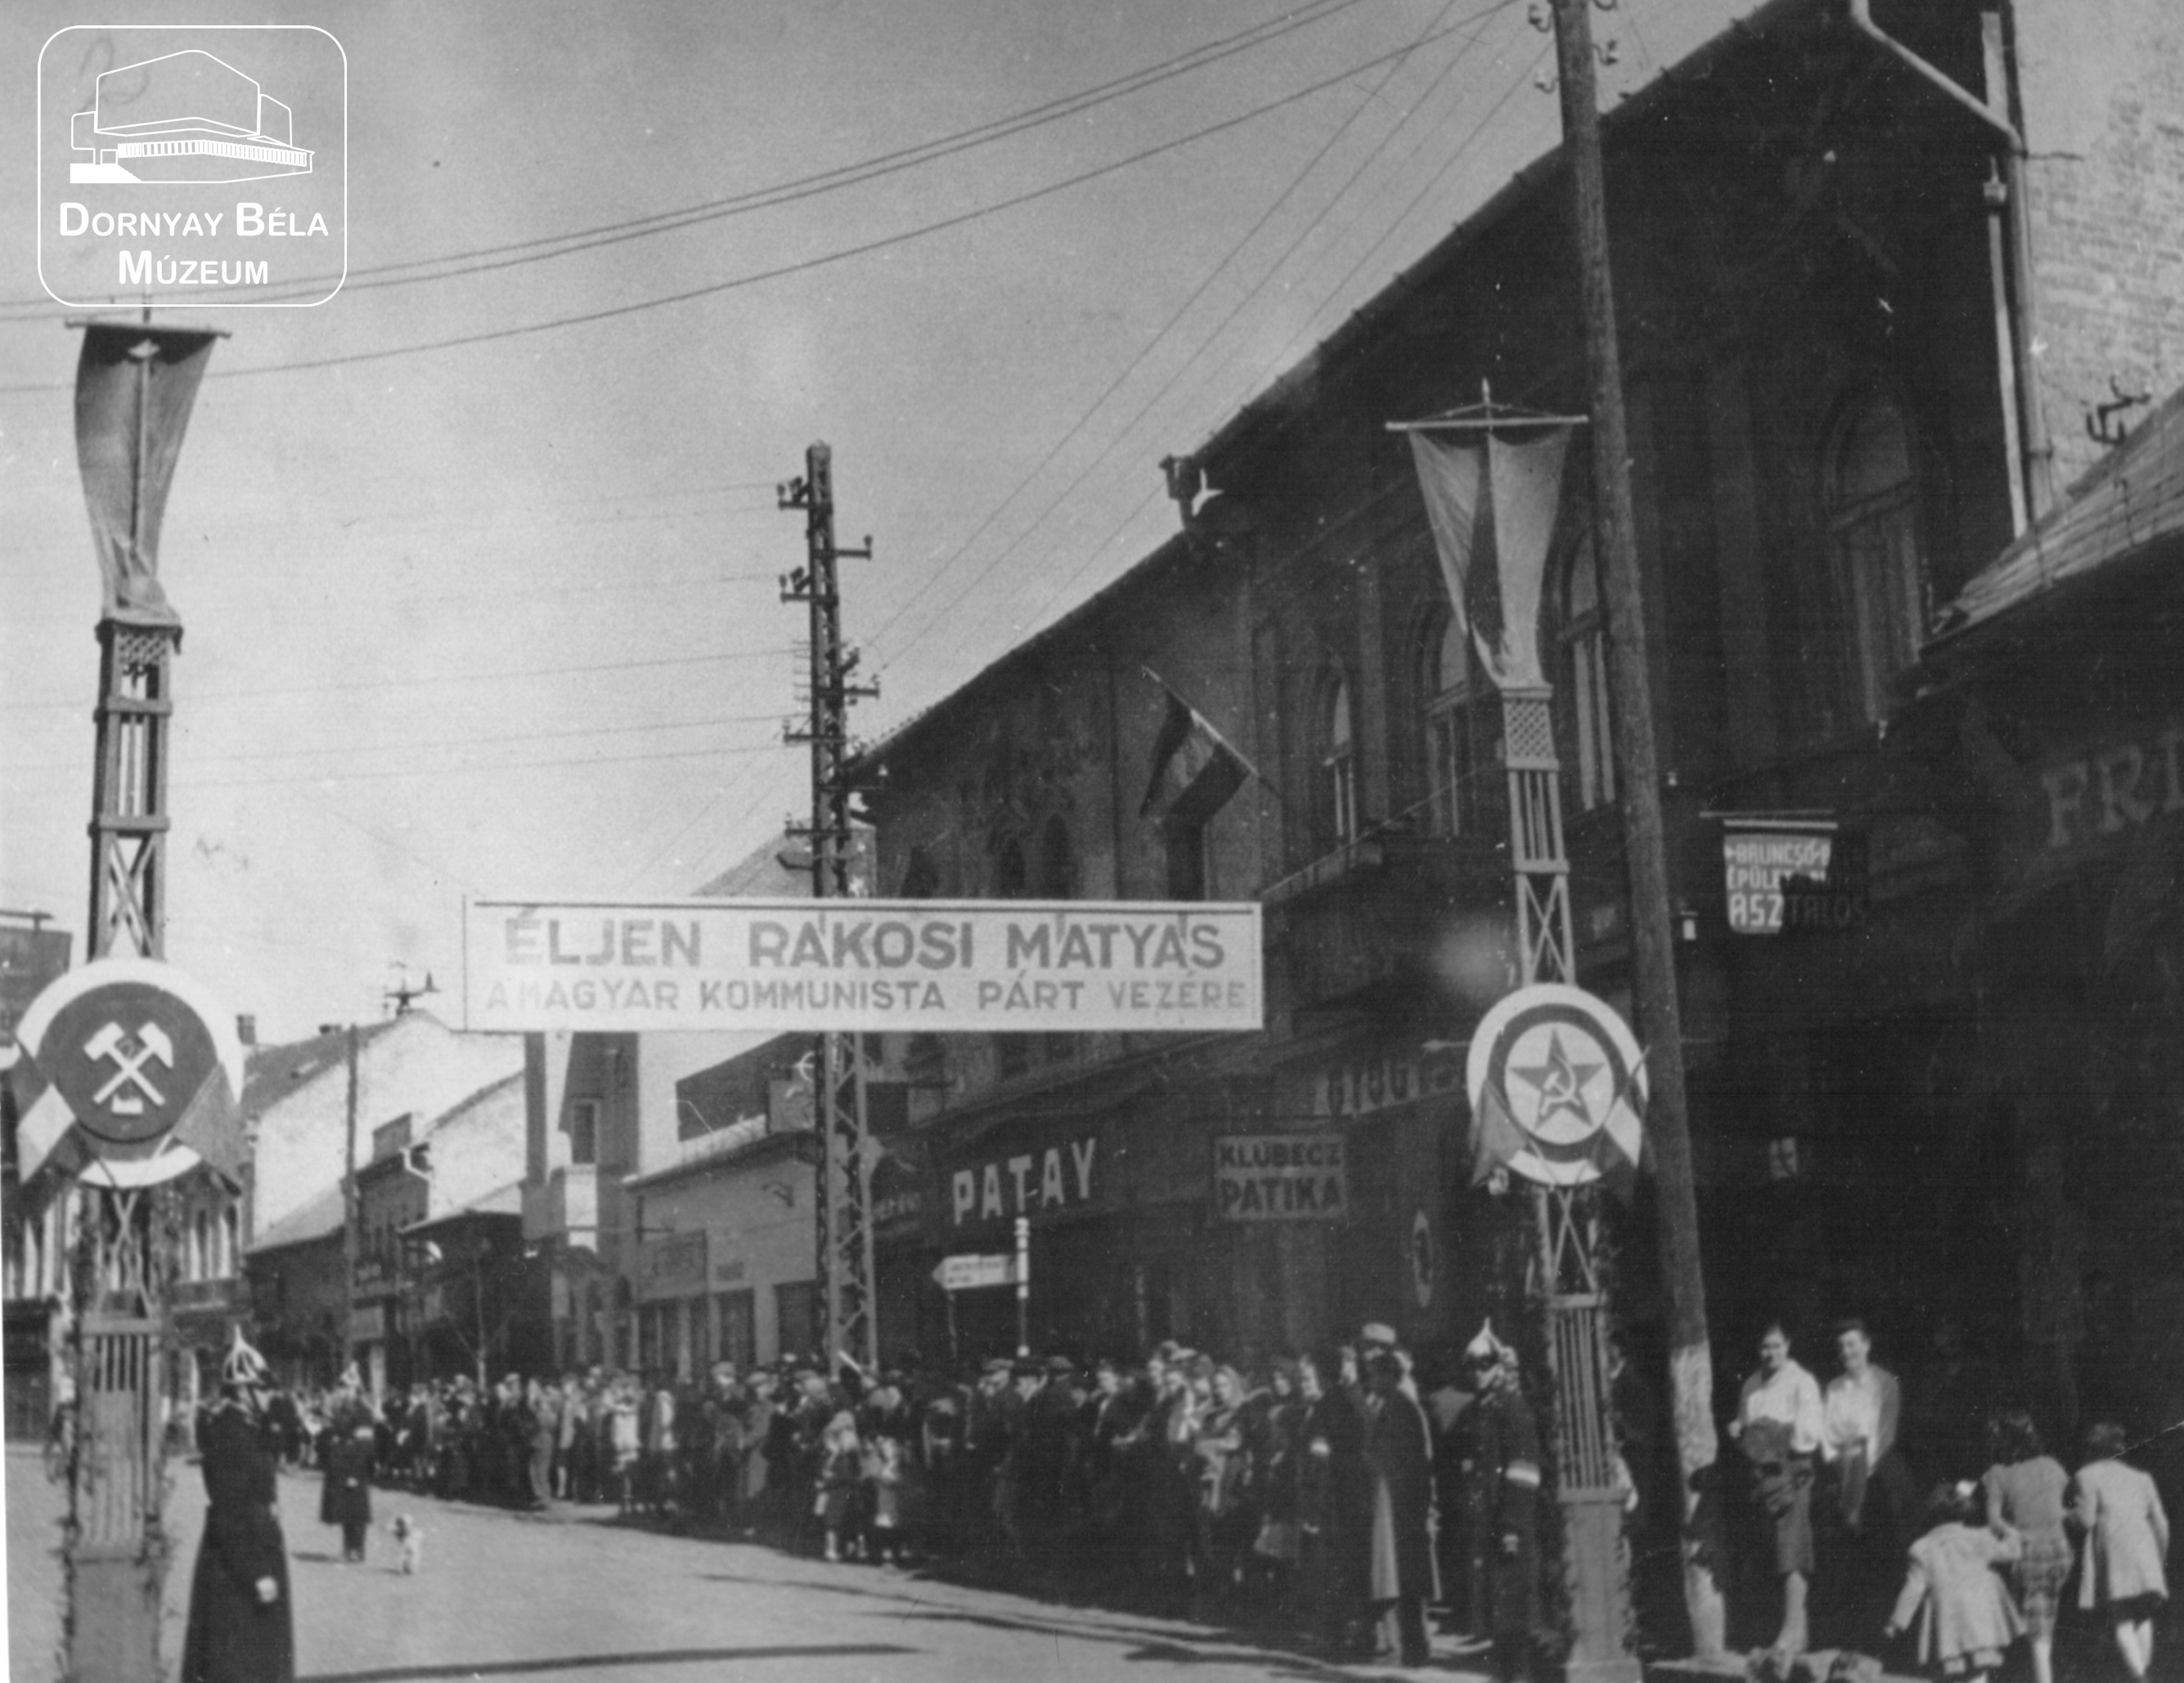 Salgótarján, Nagygyűlés előtt a Fő utcán, 1945.márc.25. MKP. (Dornyay Béla Múzeum, Salgótarján CC BY-NC-SA)